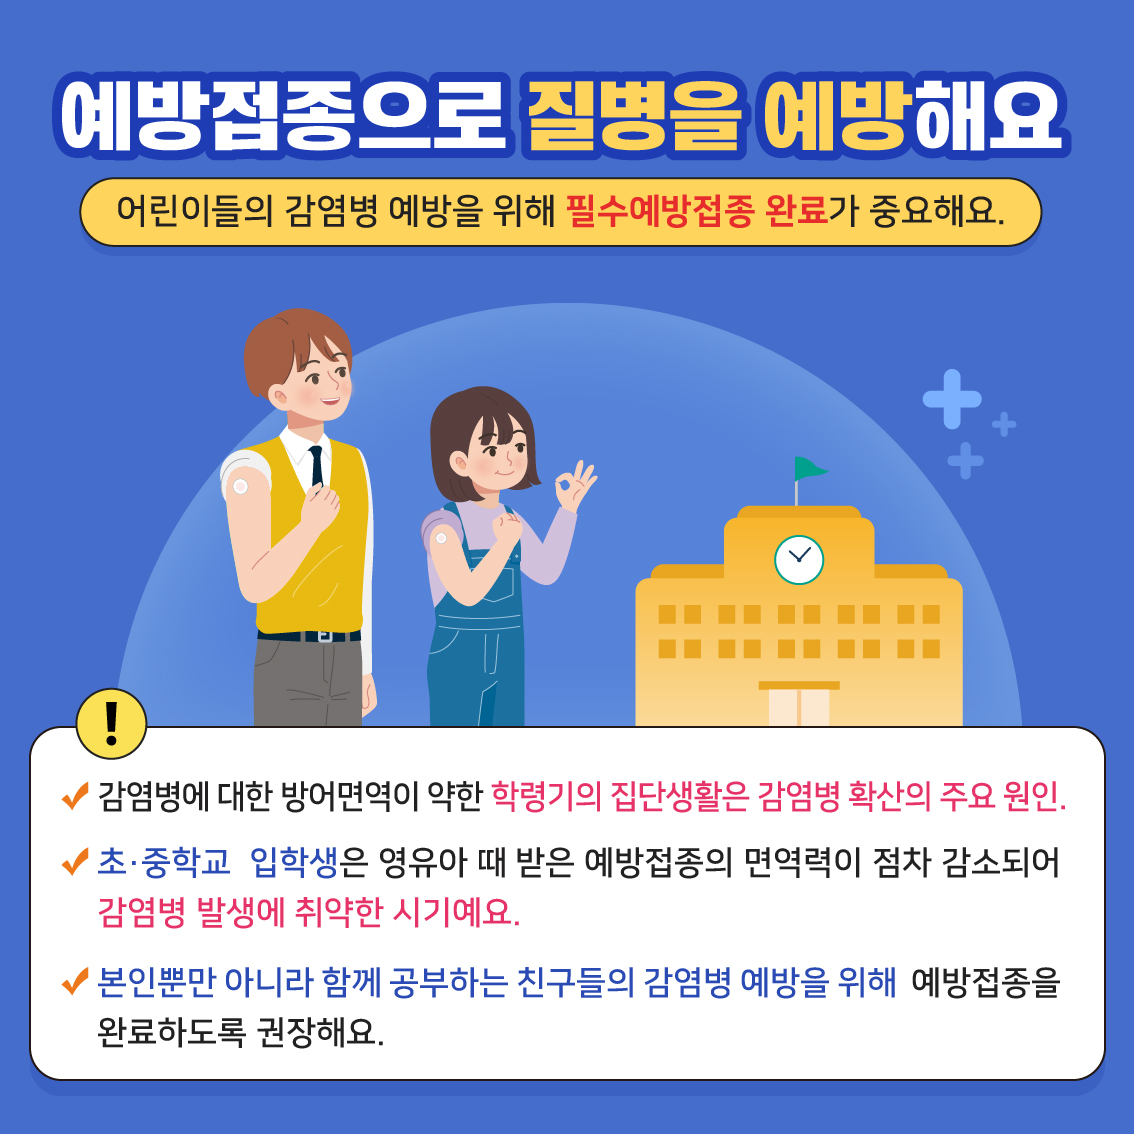 03. 학생 건강증진 정보_제1호(3월)_필수예방접종_페이지뷰2